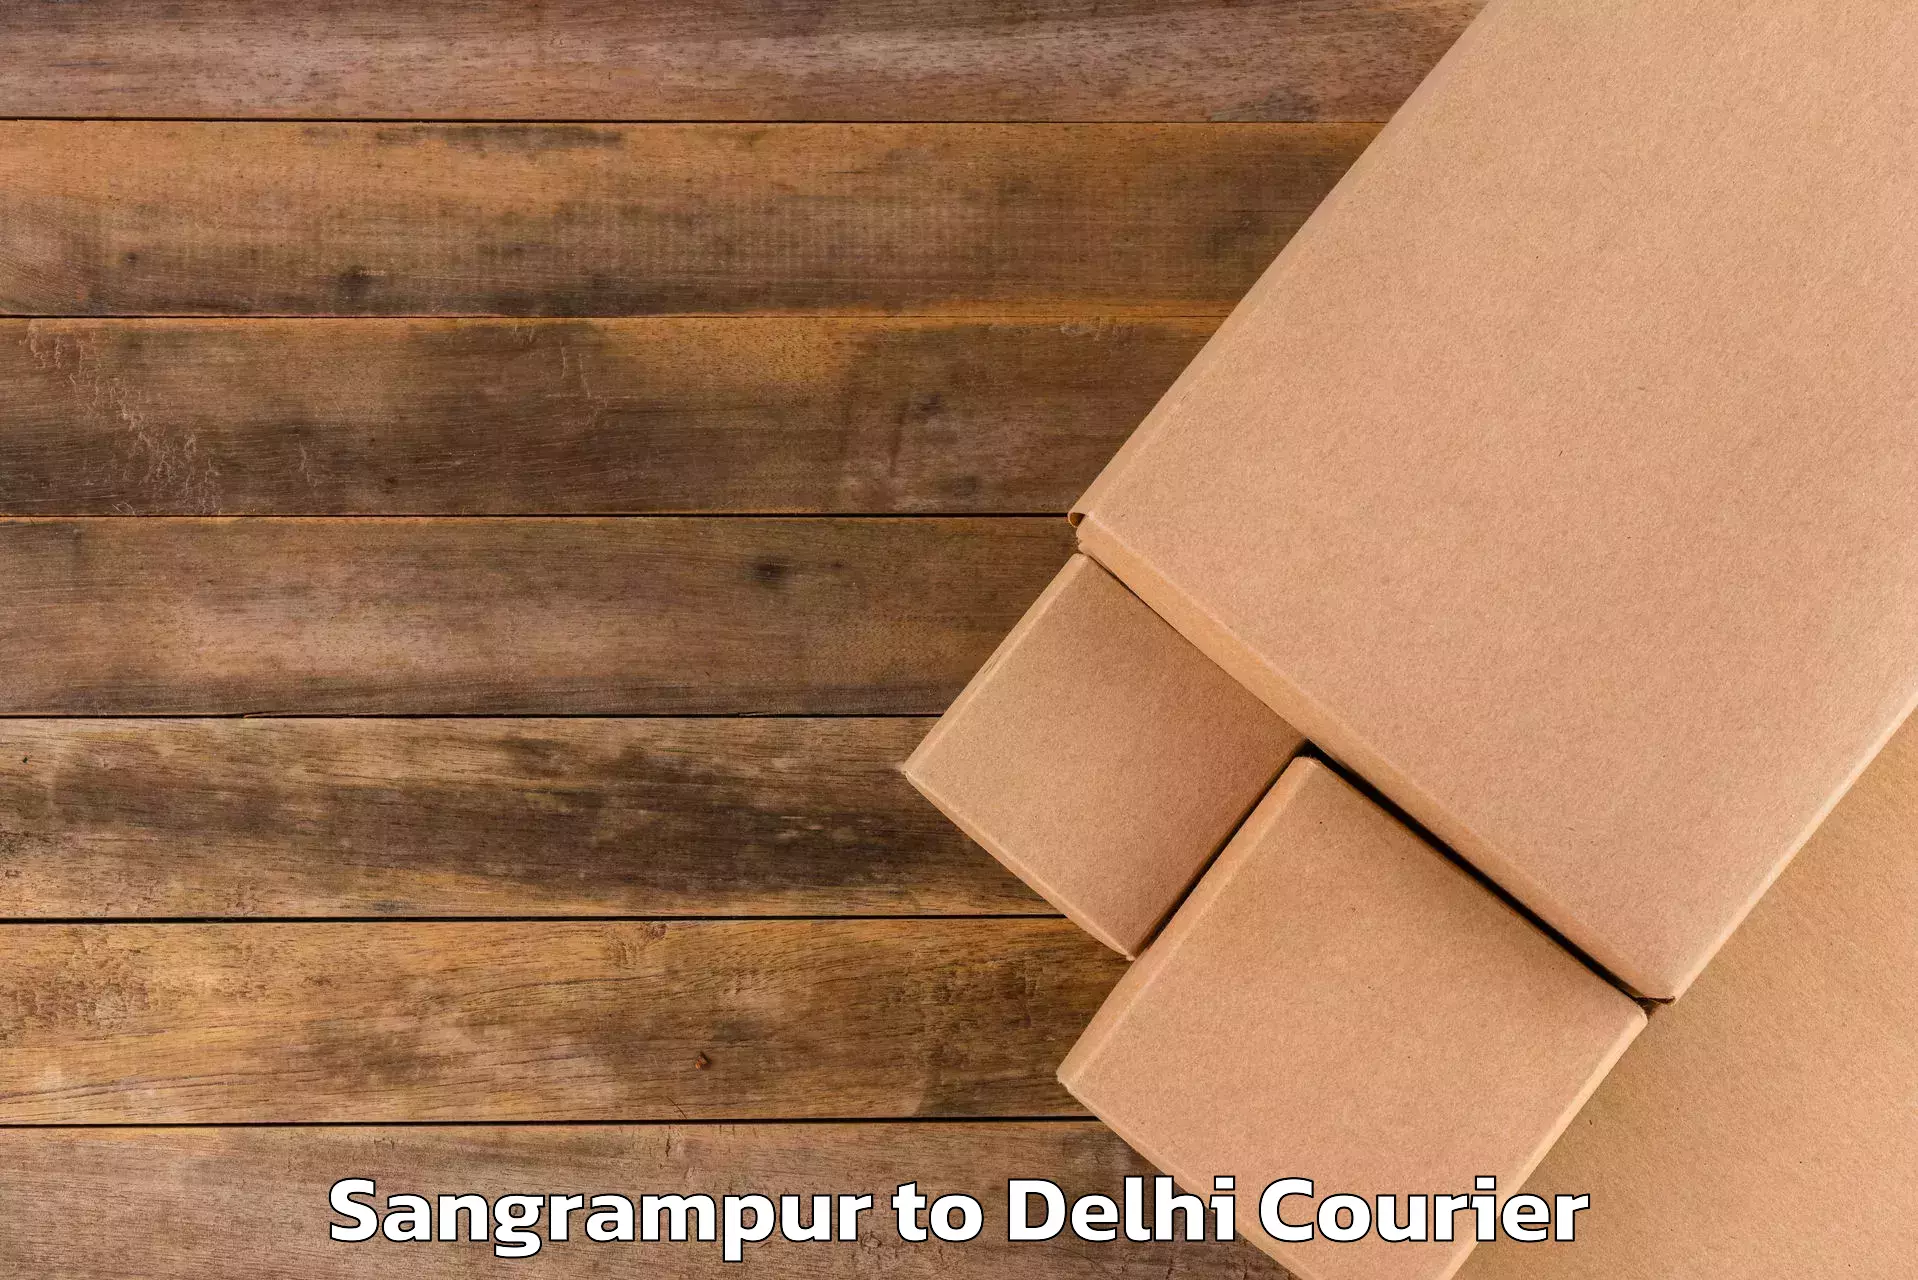 Luggage transport solutions Sangrampur to Burari